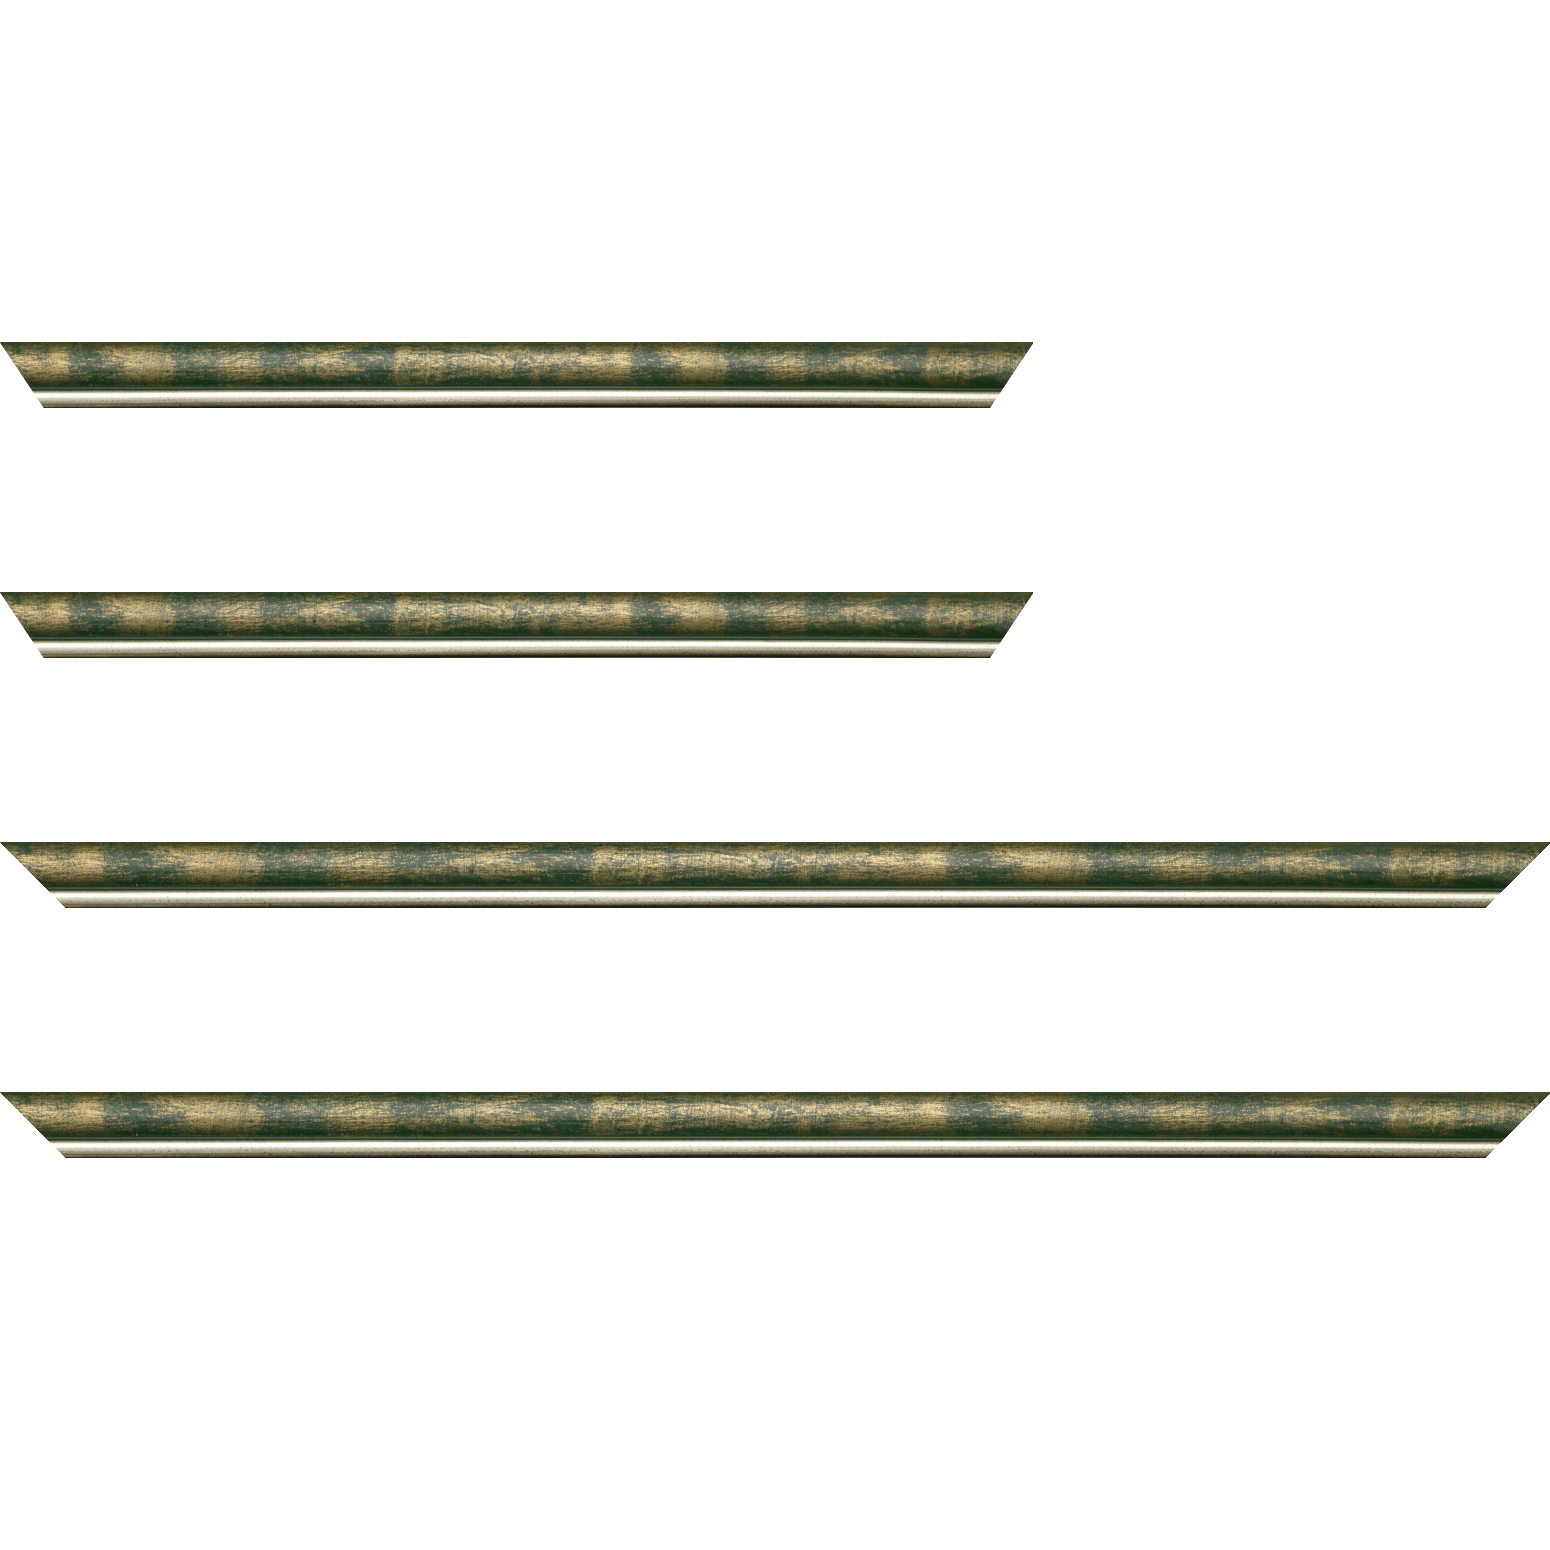 Baguette bois profil arrondi largeur 2.1cm  couleur vert fond or filet argent chaud - 40x60